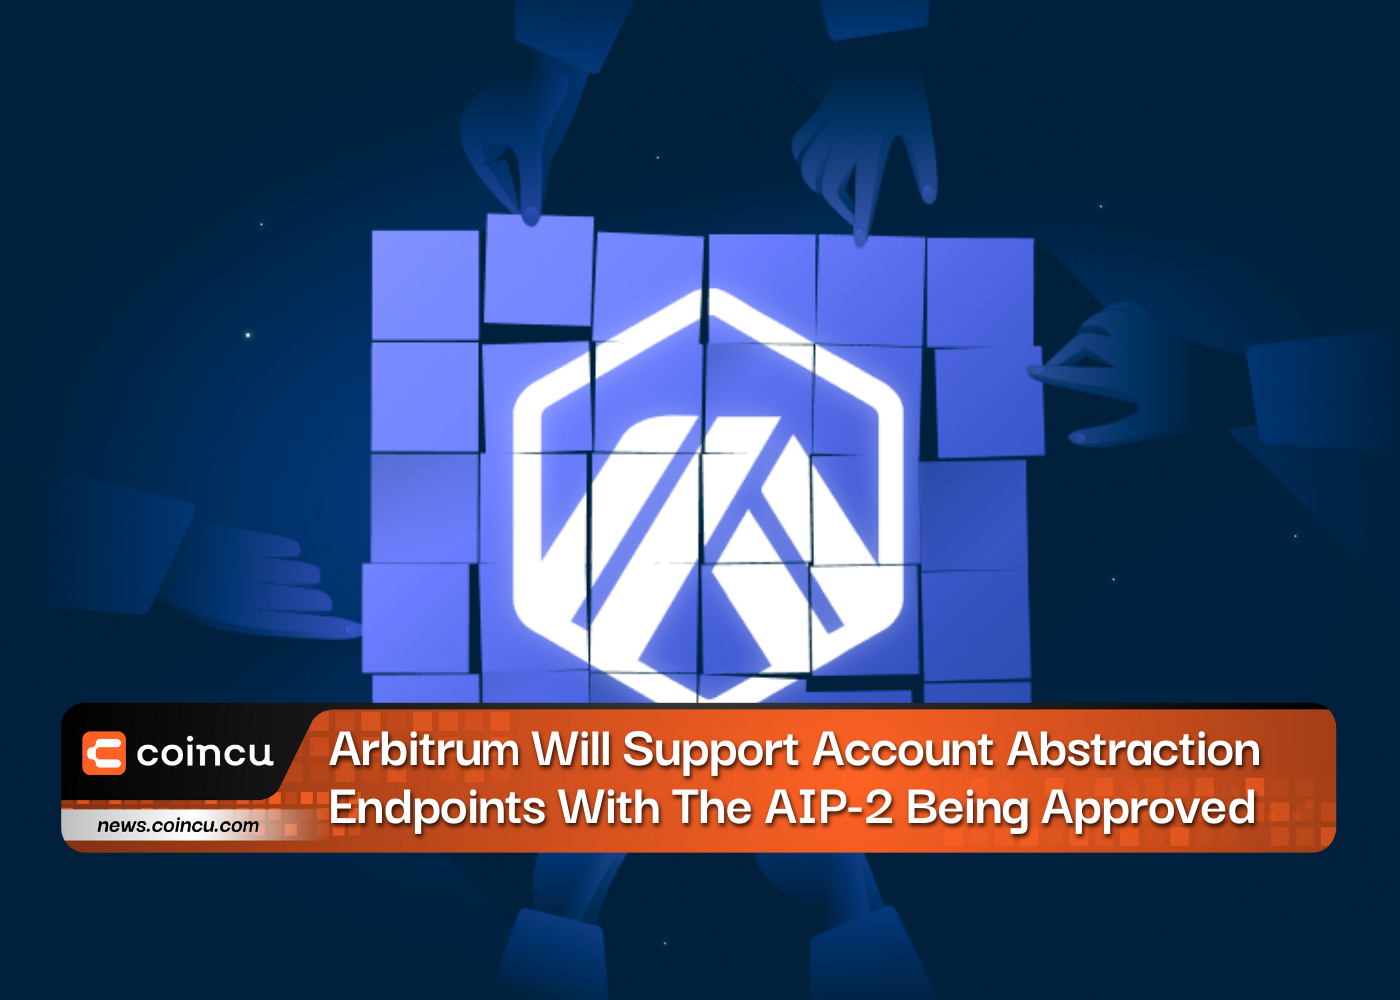 Arbitrum будет поддерживать конечные точки абстракции учетных записей после утверждения AIP-2